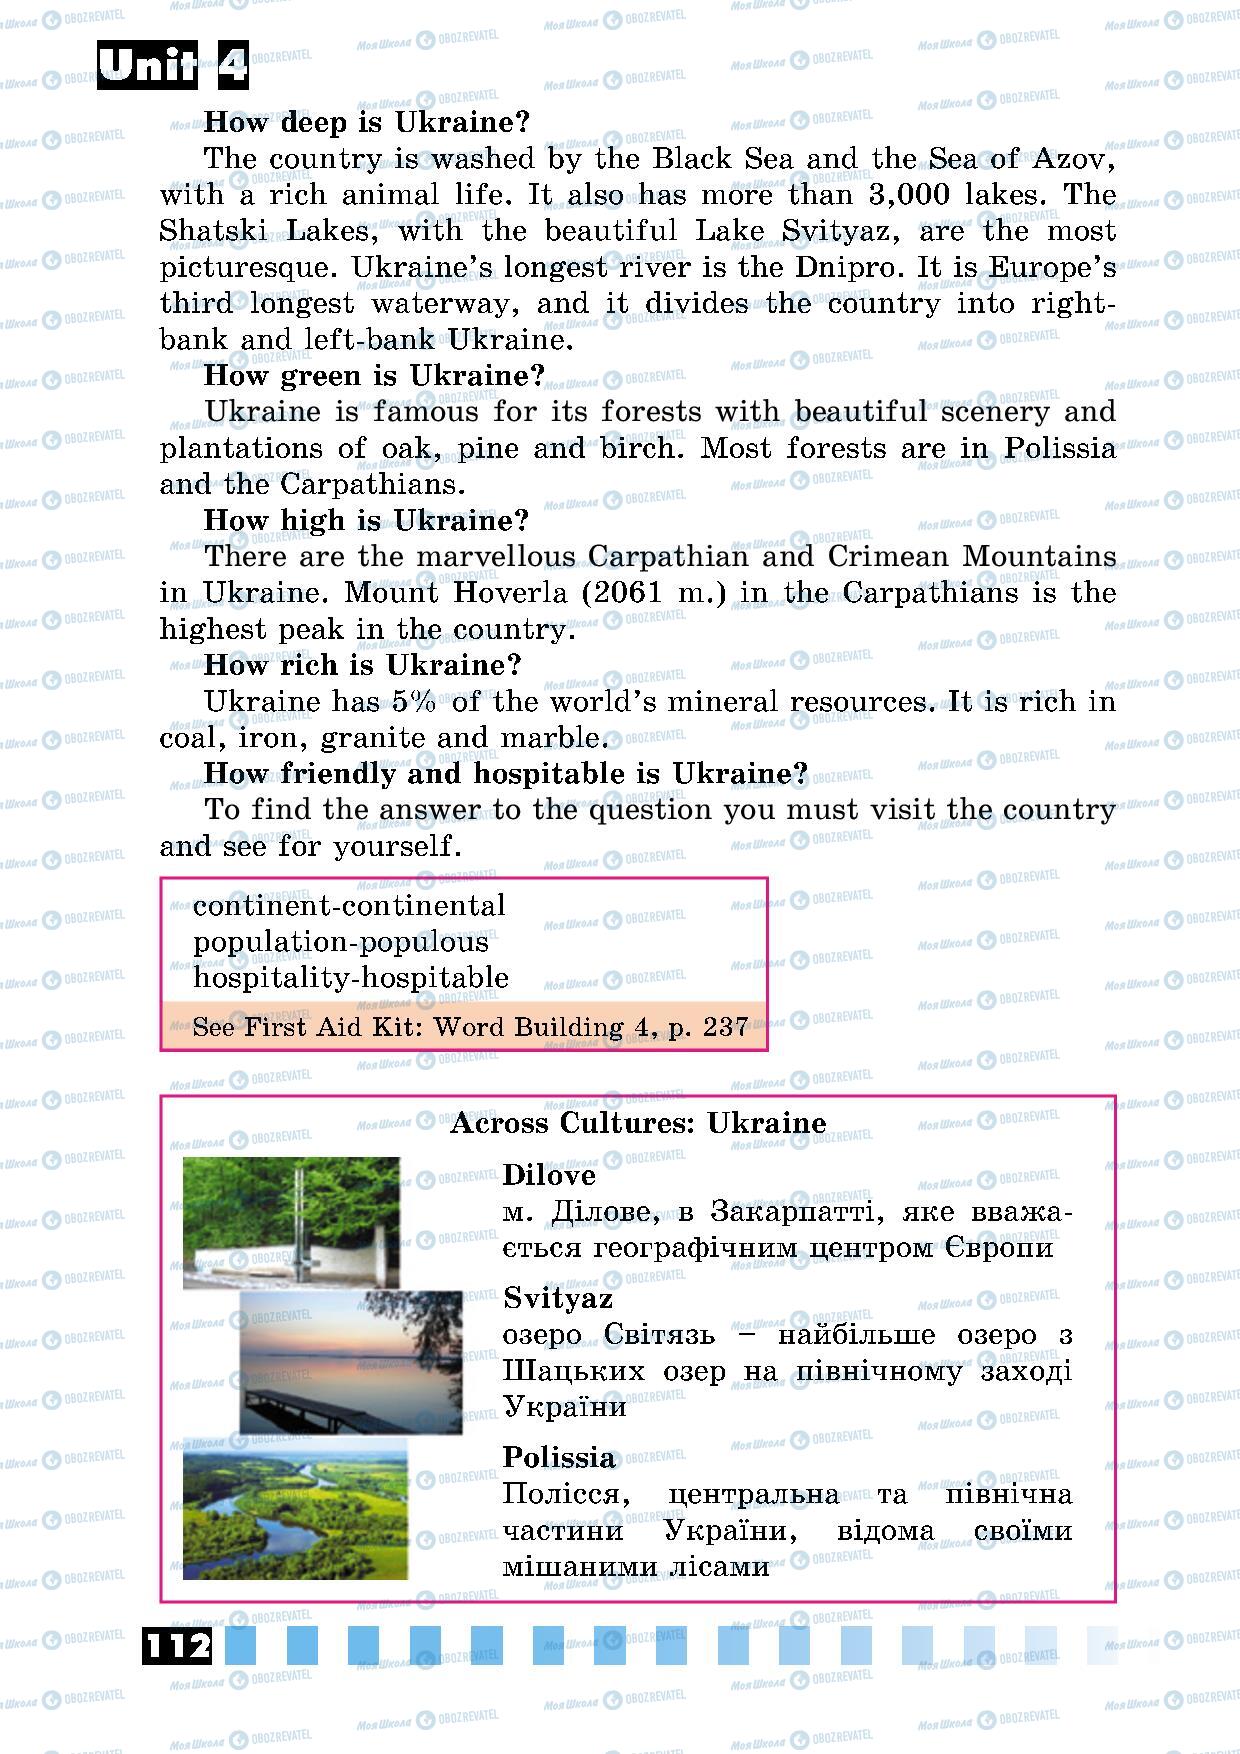 Підручники Англійська мова 5 клас сторінка 112